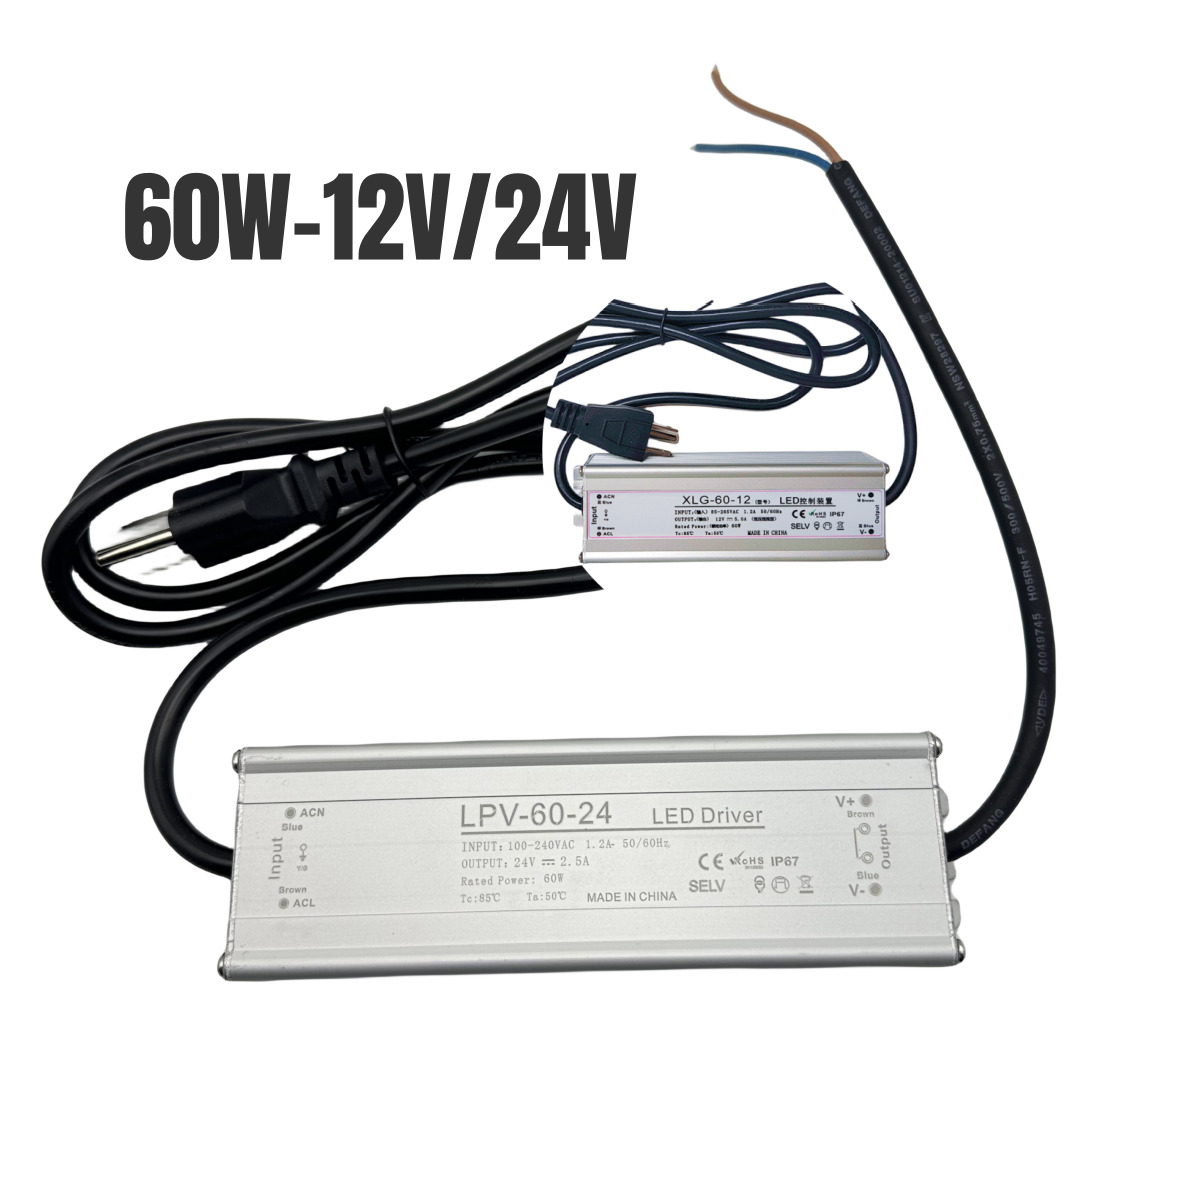 US 60W-150W Power Supply AC110V to DC12V/24V LED Driver Transformer Adapter IP67